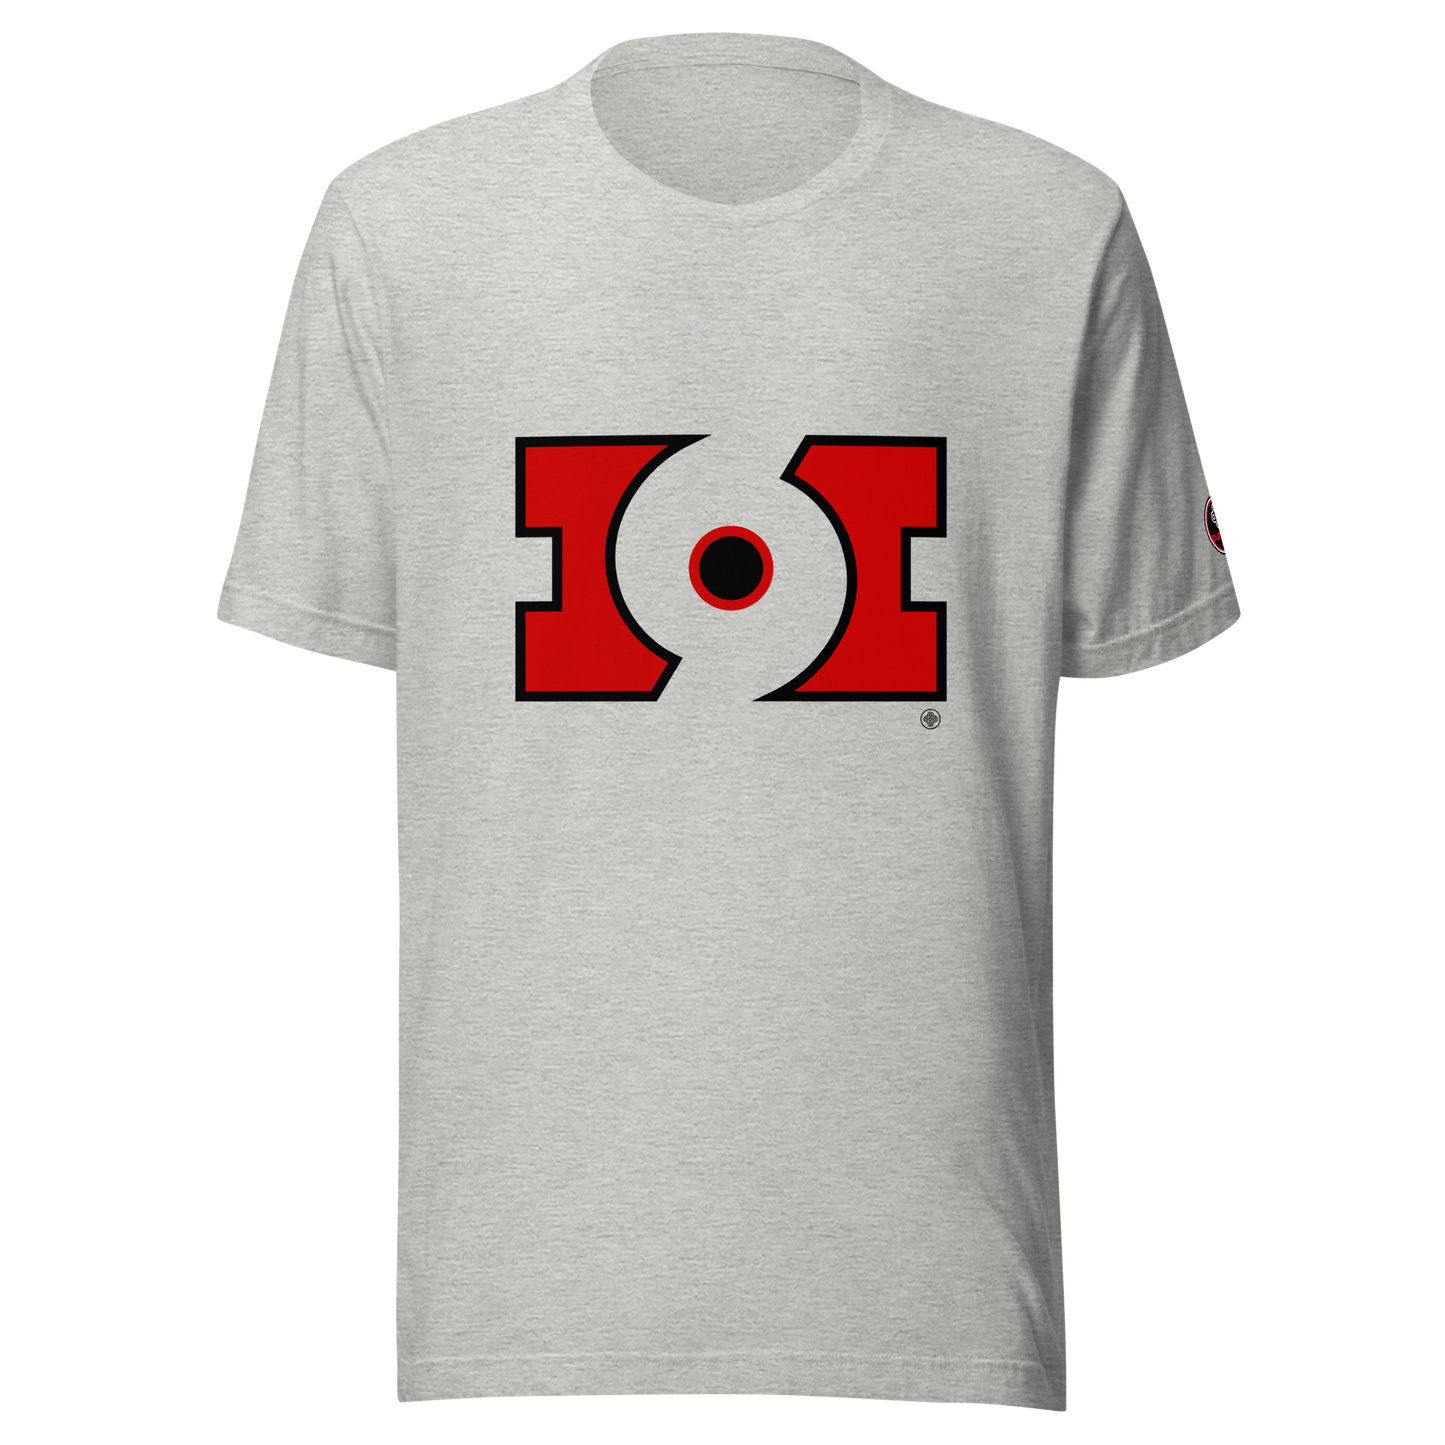 Unisex t-shirt ❯ Concept 70: Hurricanes